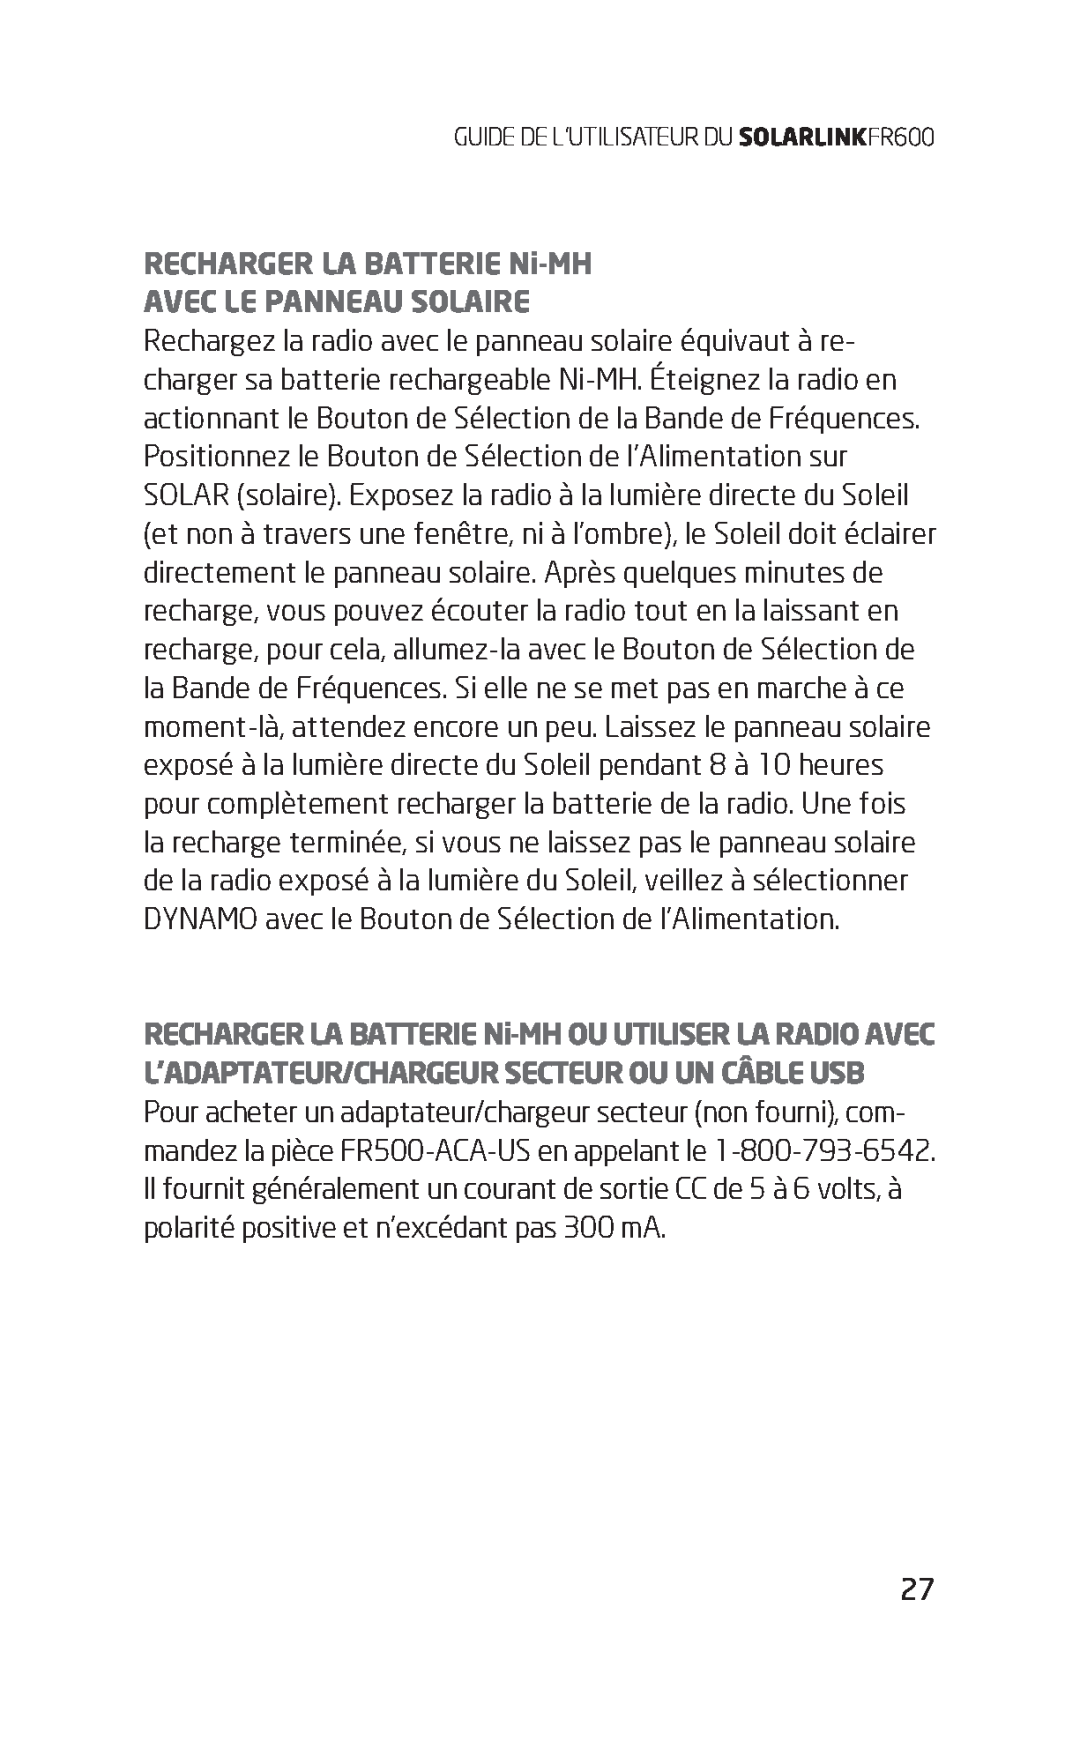 Eton FR600 owner manual RECHARGER LA BATTERIE Ni-MH AVEC LE PANNEAU SOLAIRE 